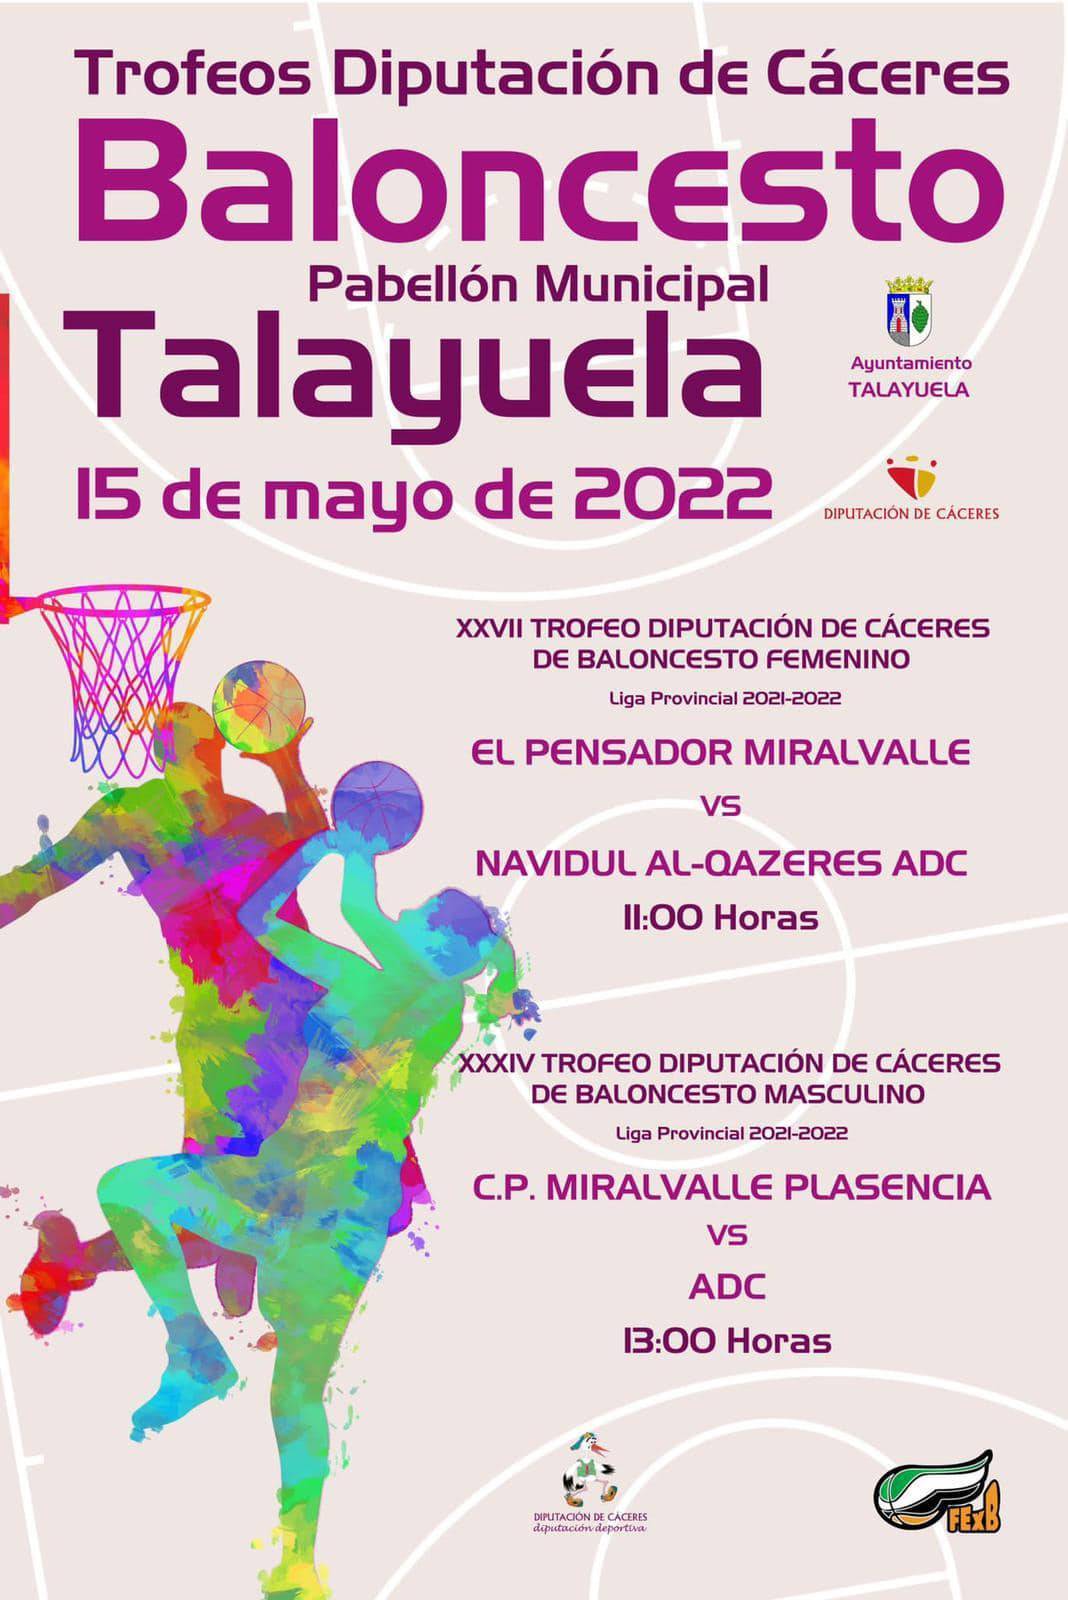 Trofeos Diputación de Cáceres de Baloncesto (2022) - Talayuela (Cáceres)